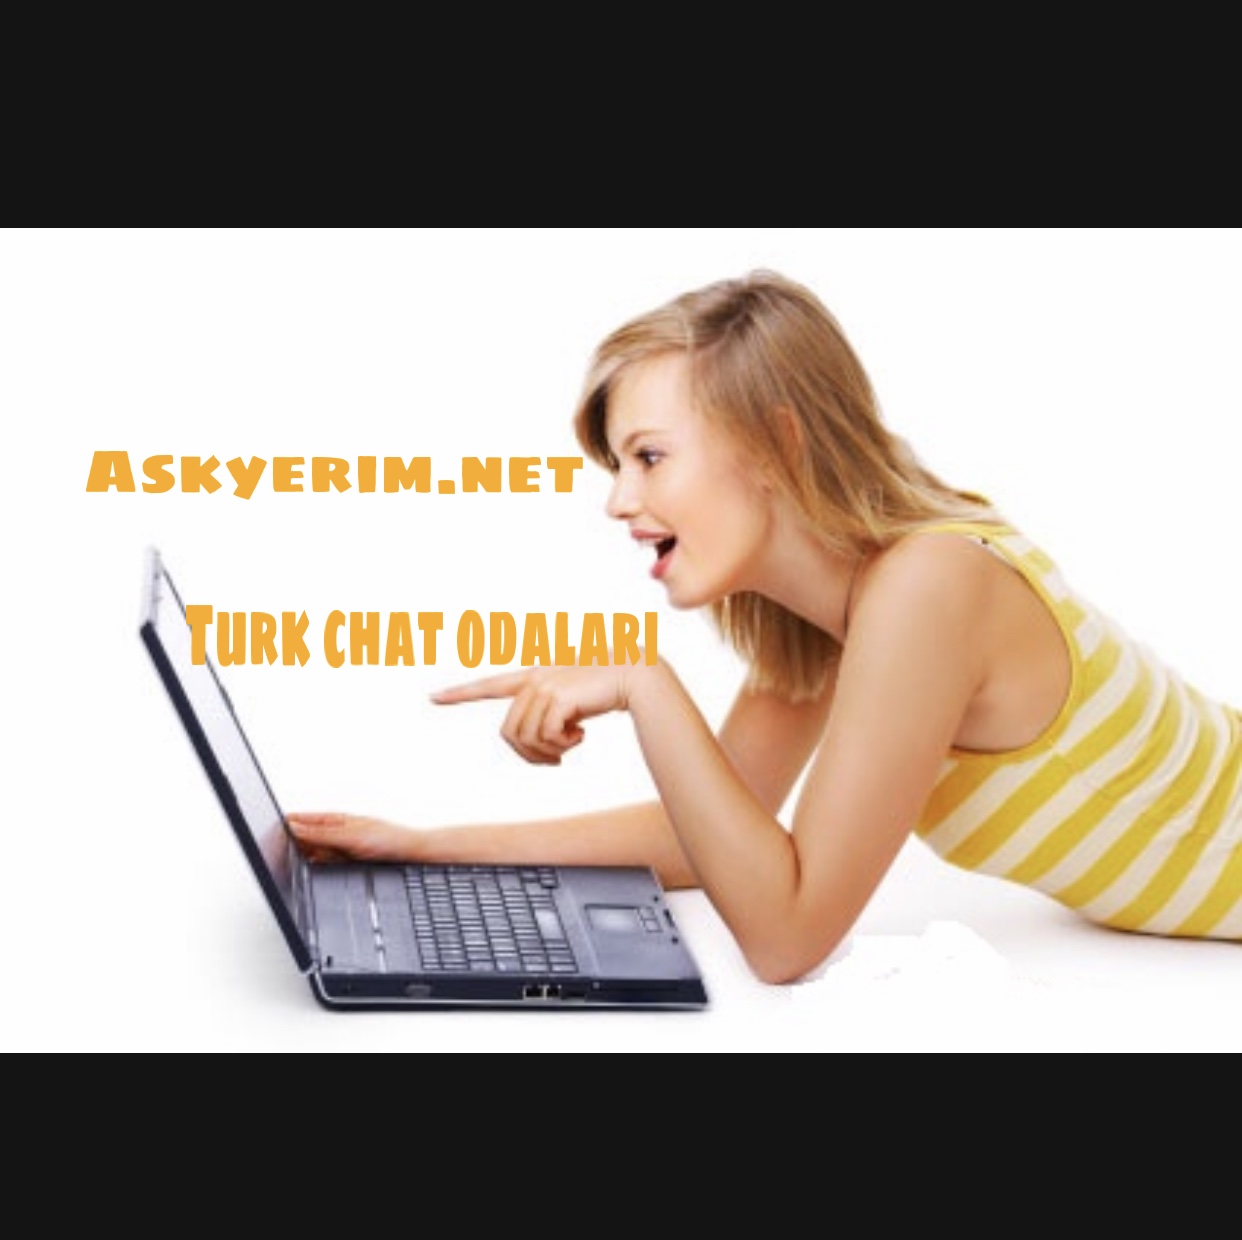 Turk Chat Odalari